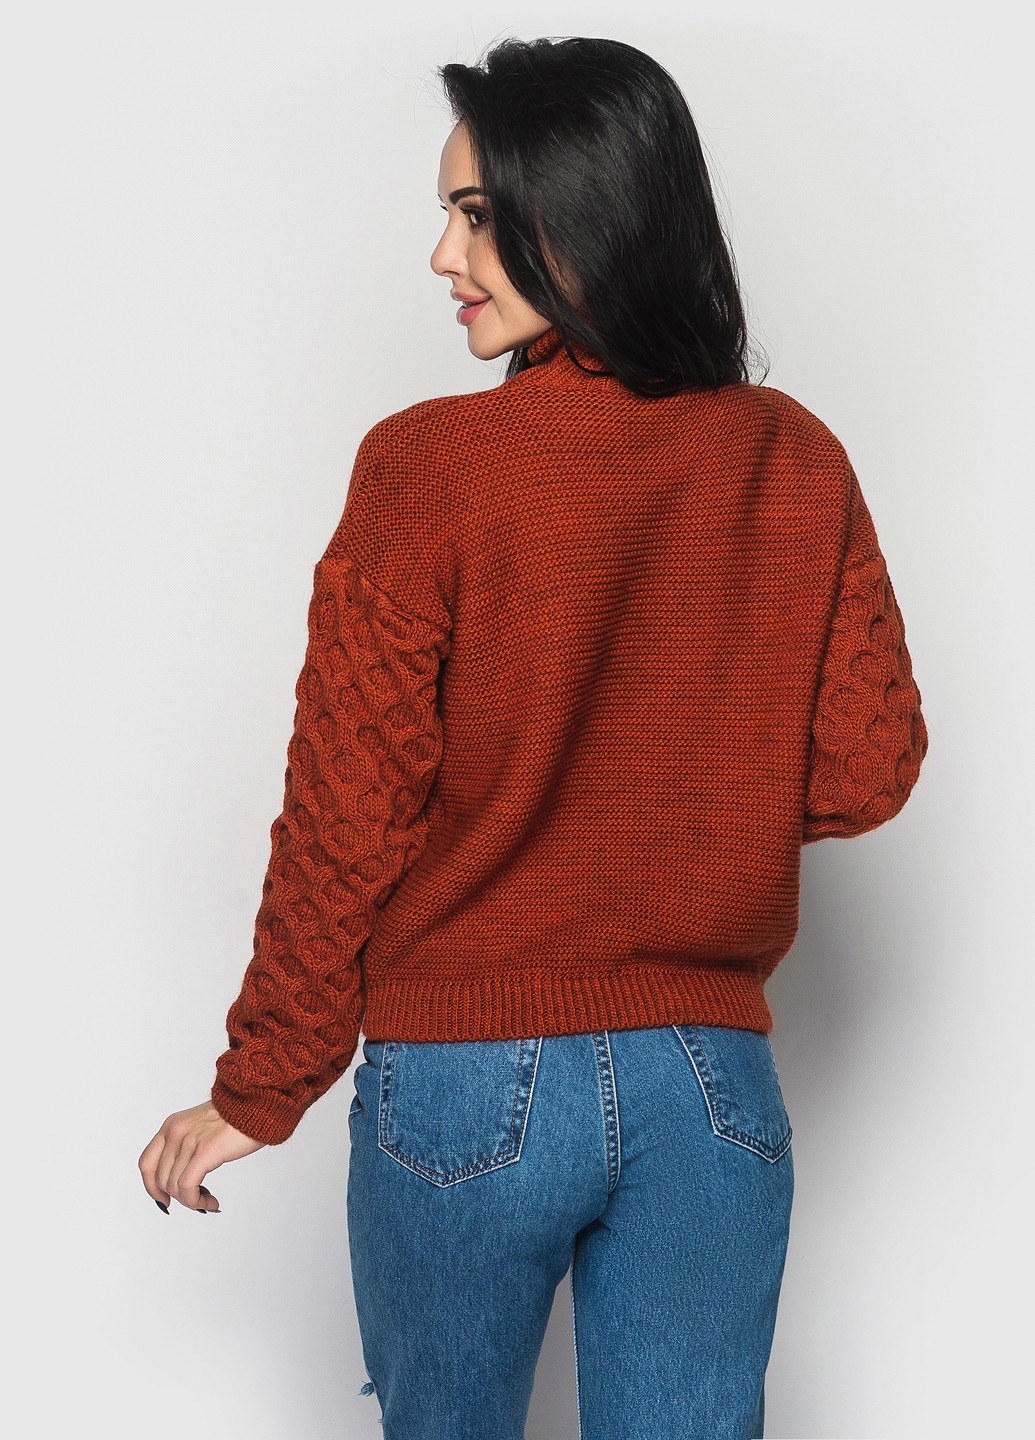 Бордовый зимний свитер Larionoff